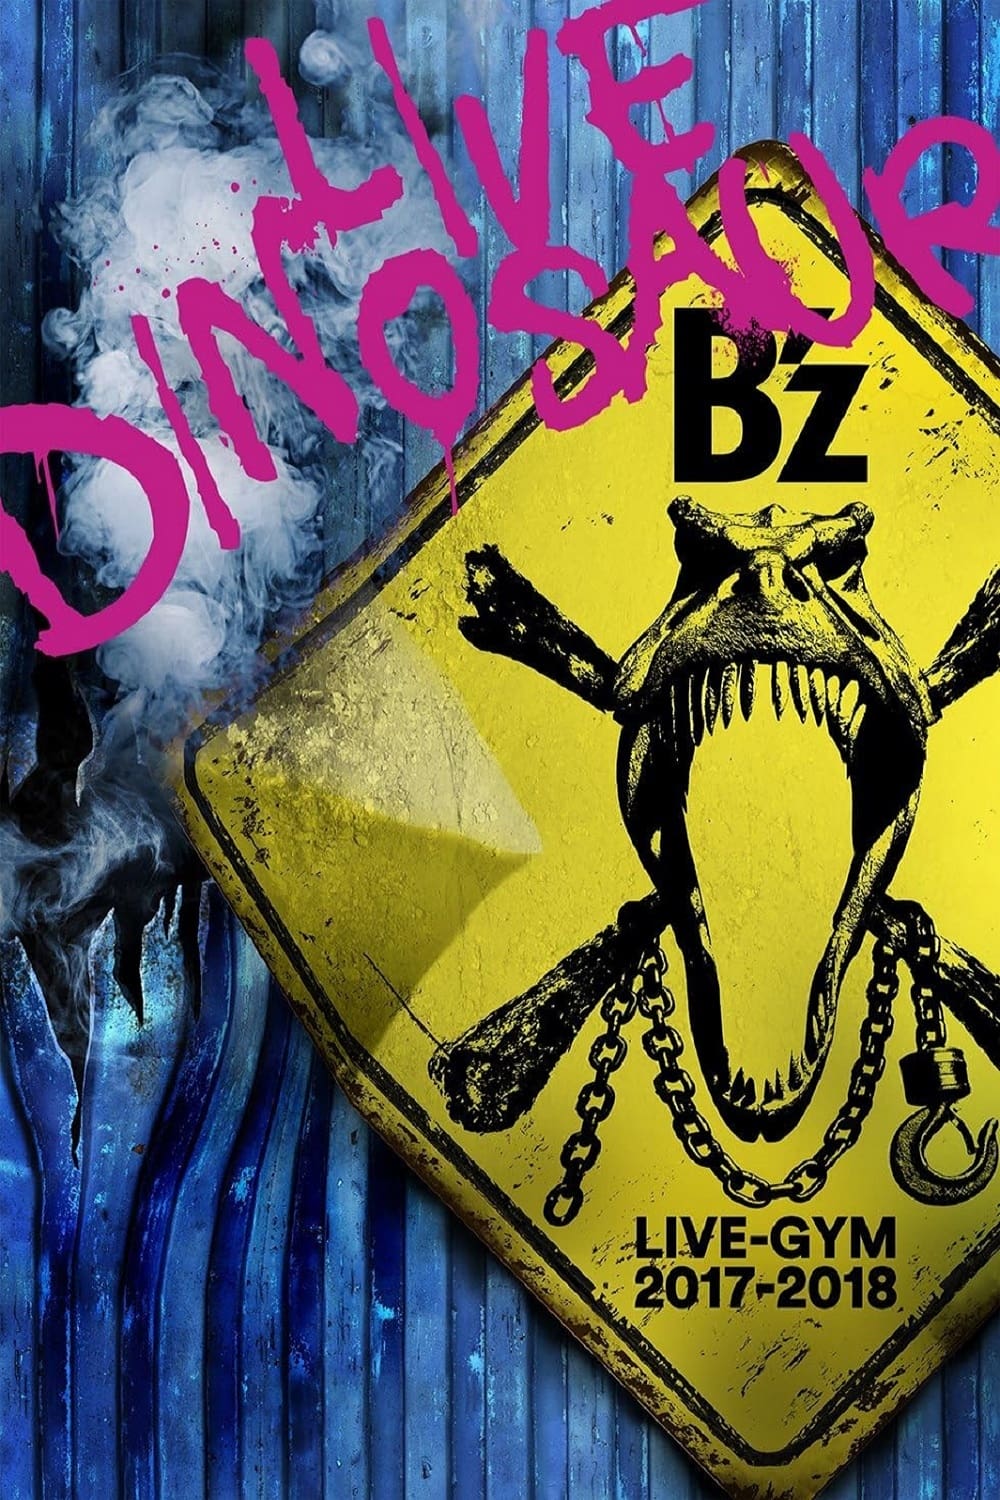 B'z LIVE-GYM 2017-2018 “LIVE DINOSAUR”